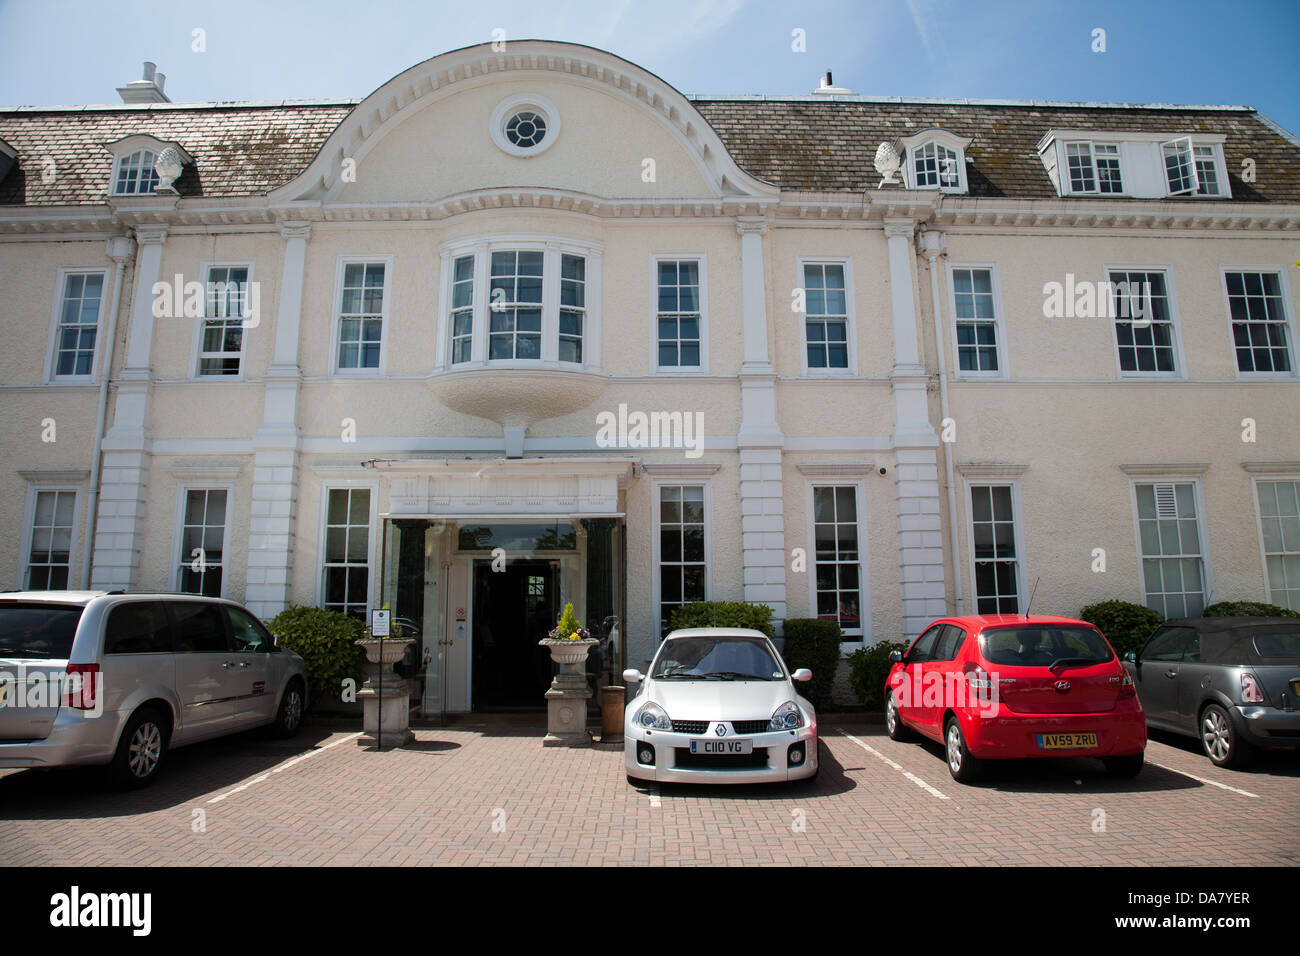 Voiture Renault Clio V6 à l'extérieur du parc un hôtel dans le sud de Londres Banque D'Images